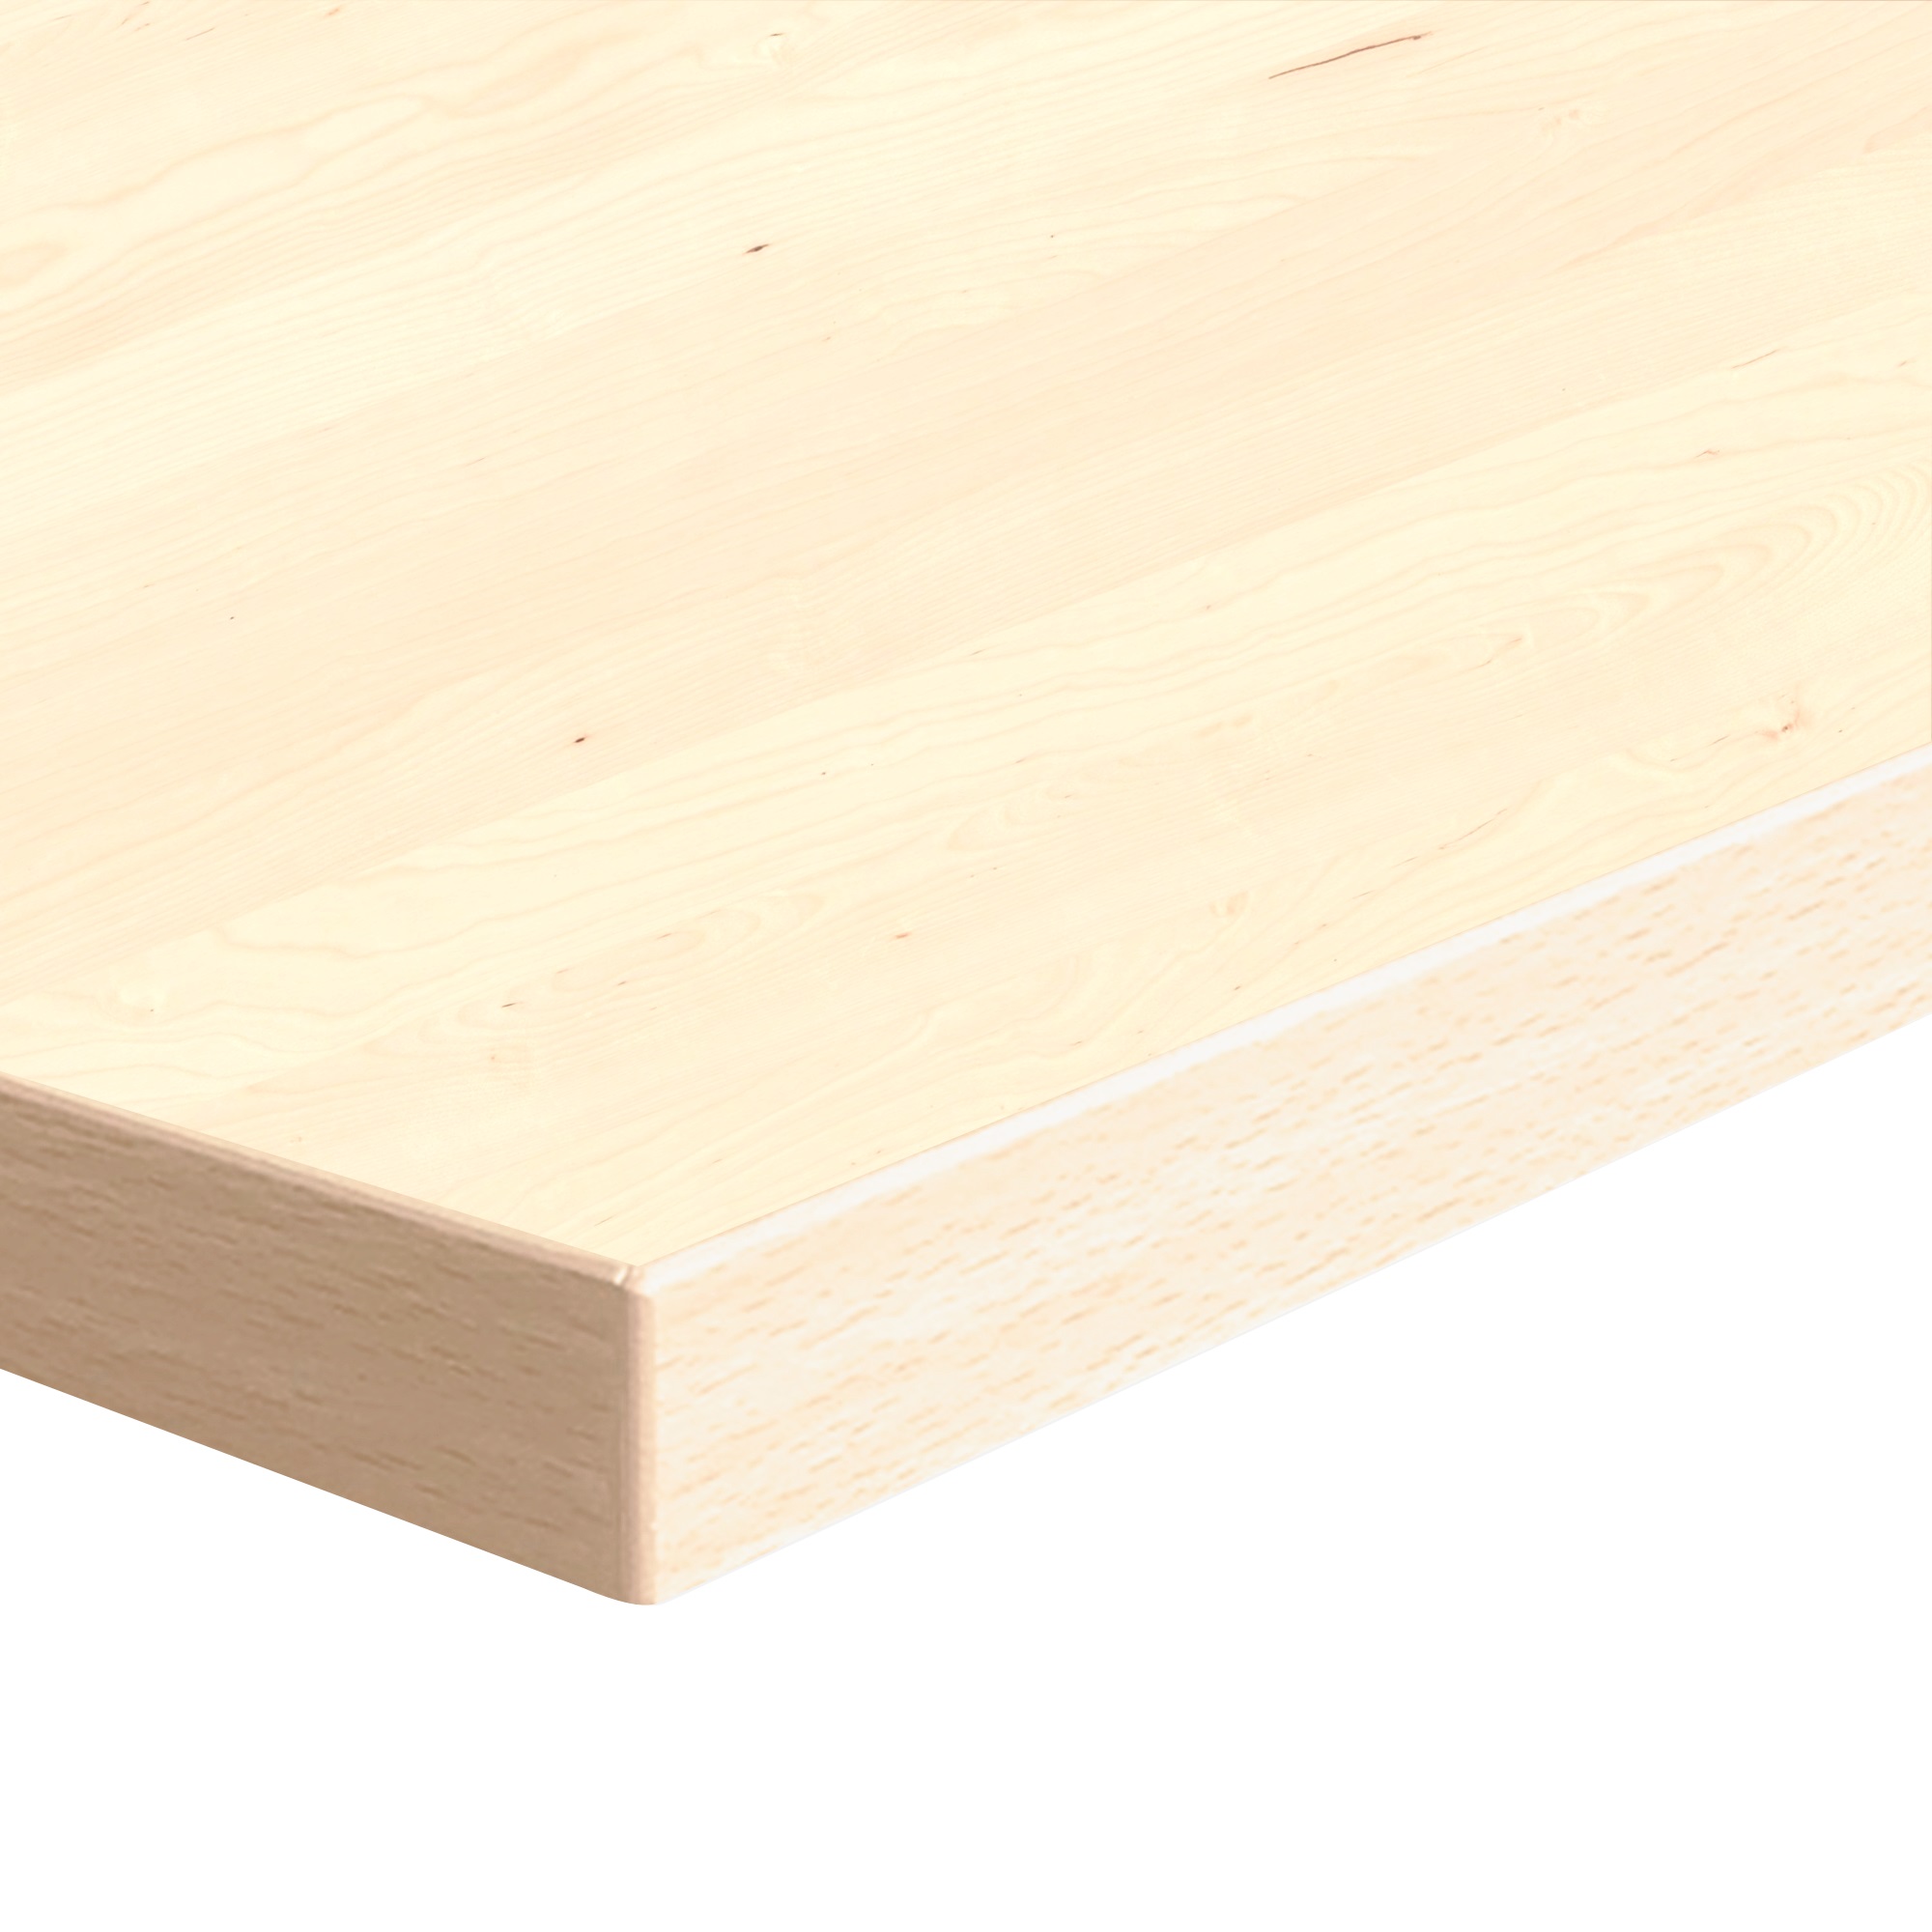 Tabletop | 140x90 cm | Maple